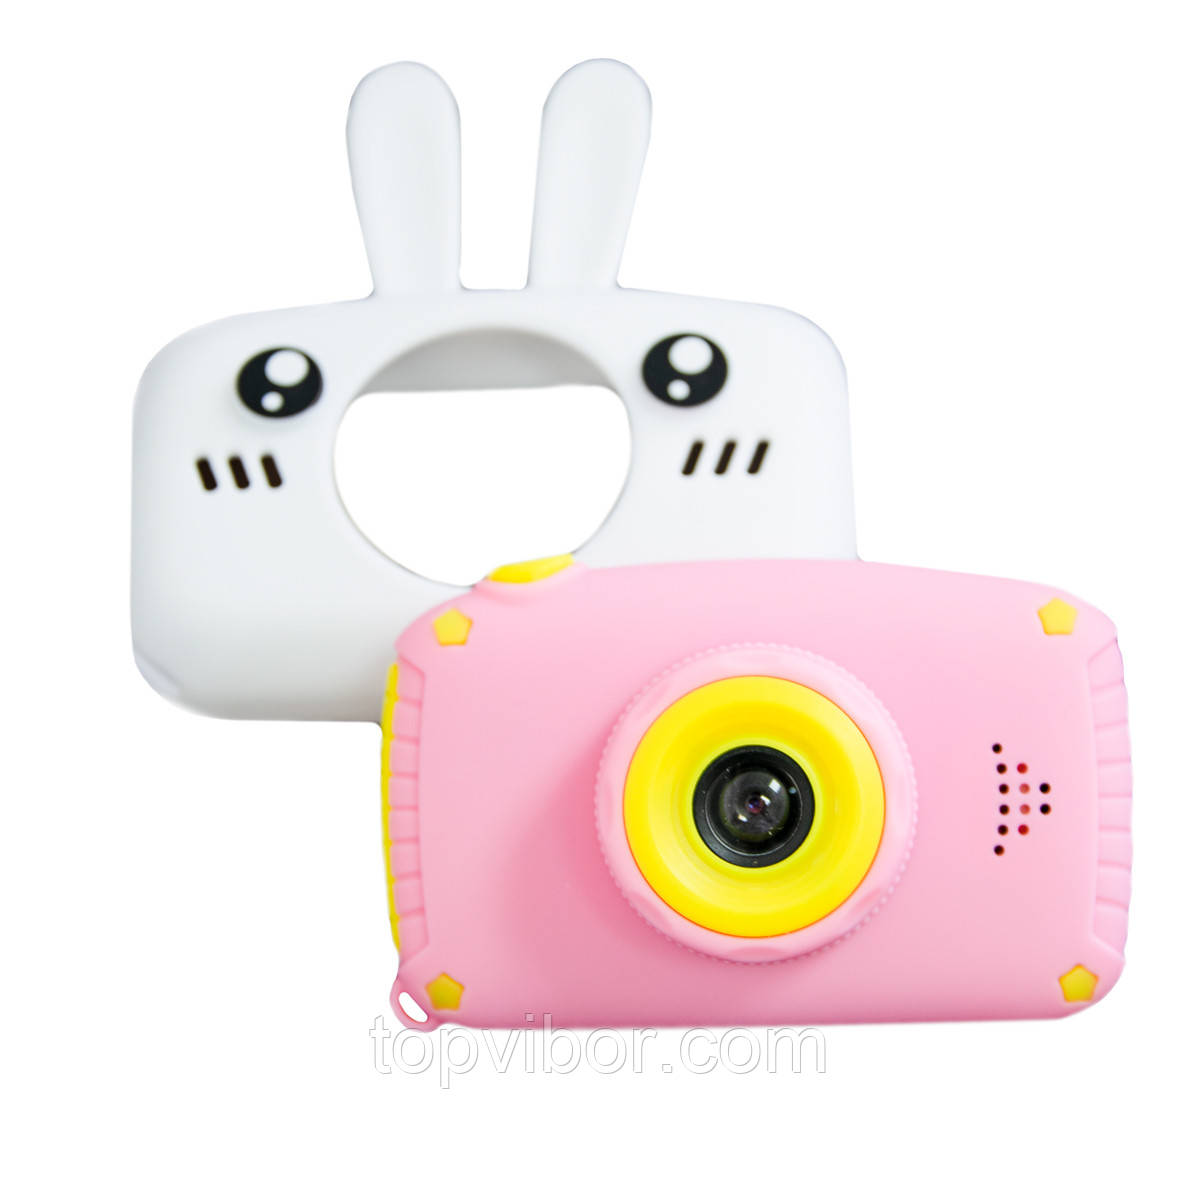 Фотоапарат дитячий цифровий "Сhildren's fun camera - Білий заєць", фото-камера для дітей (детский фотоаппарат), фото 1